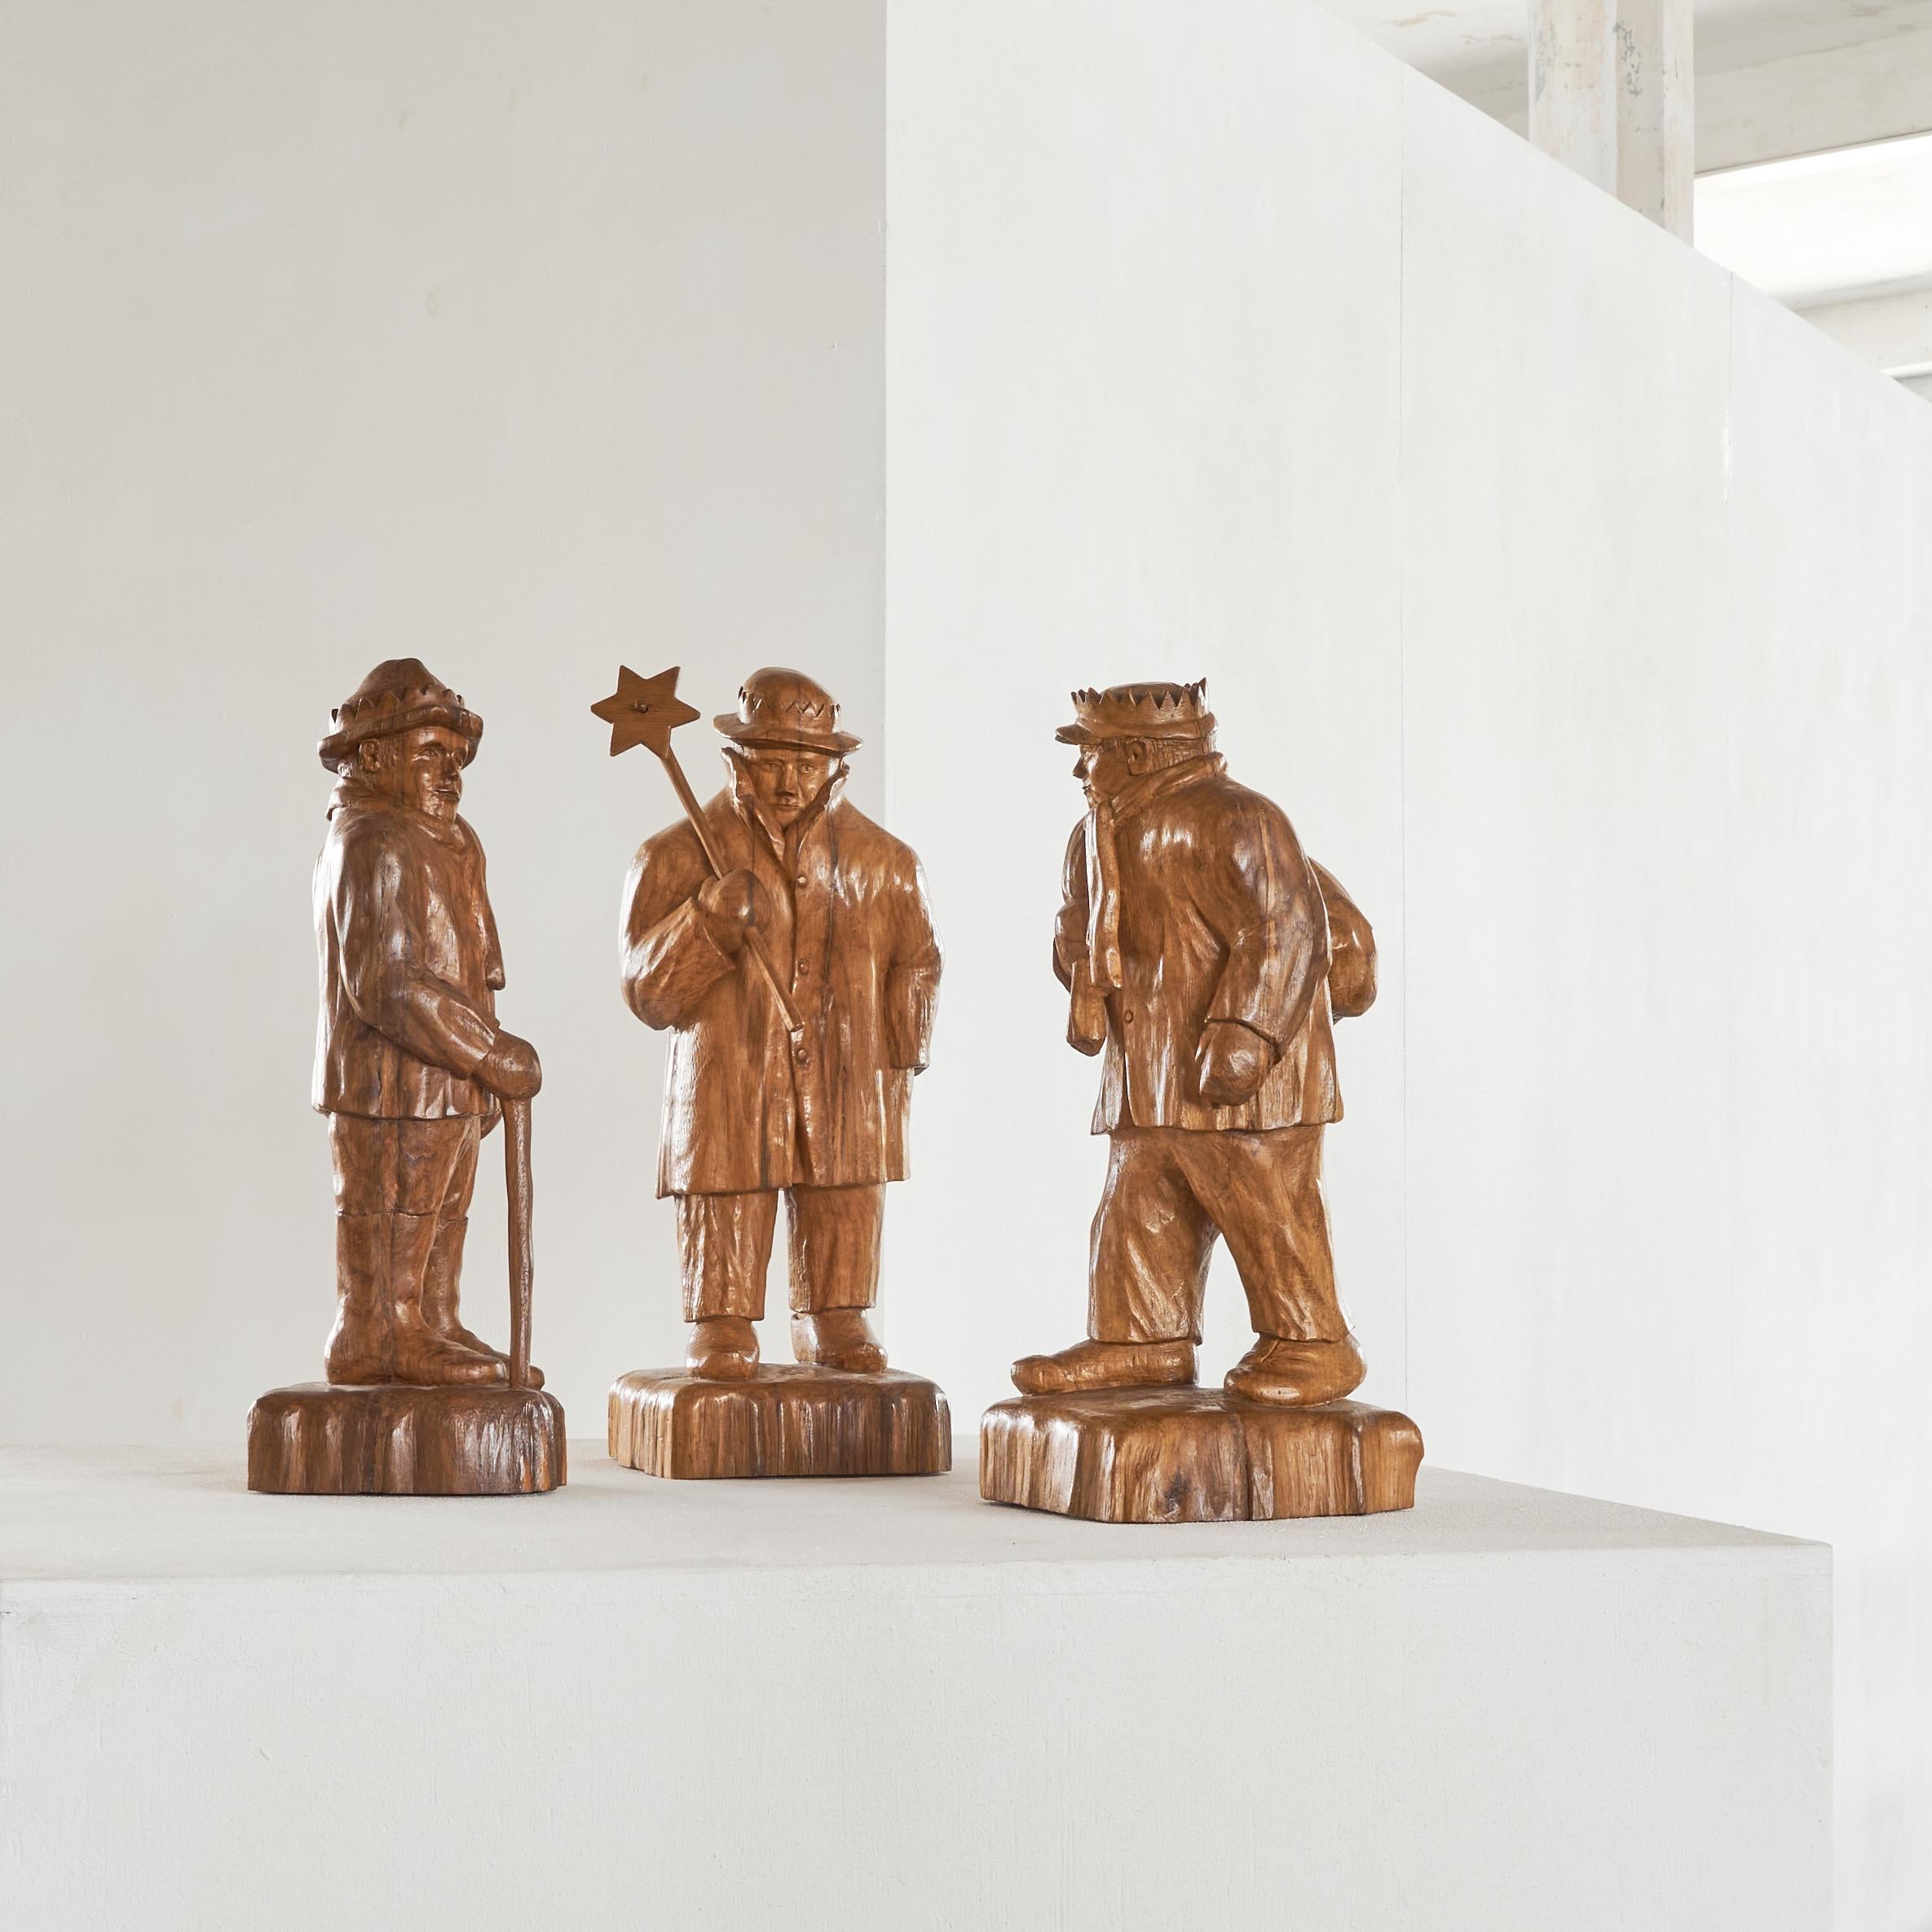 Belgian Felix Timmermans '3 Wise Men' Flemish Folk Art Sculptures in Carved Wood 1970 For Sale